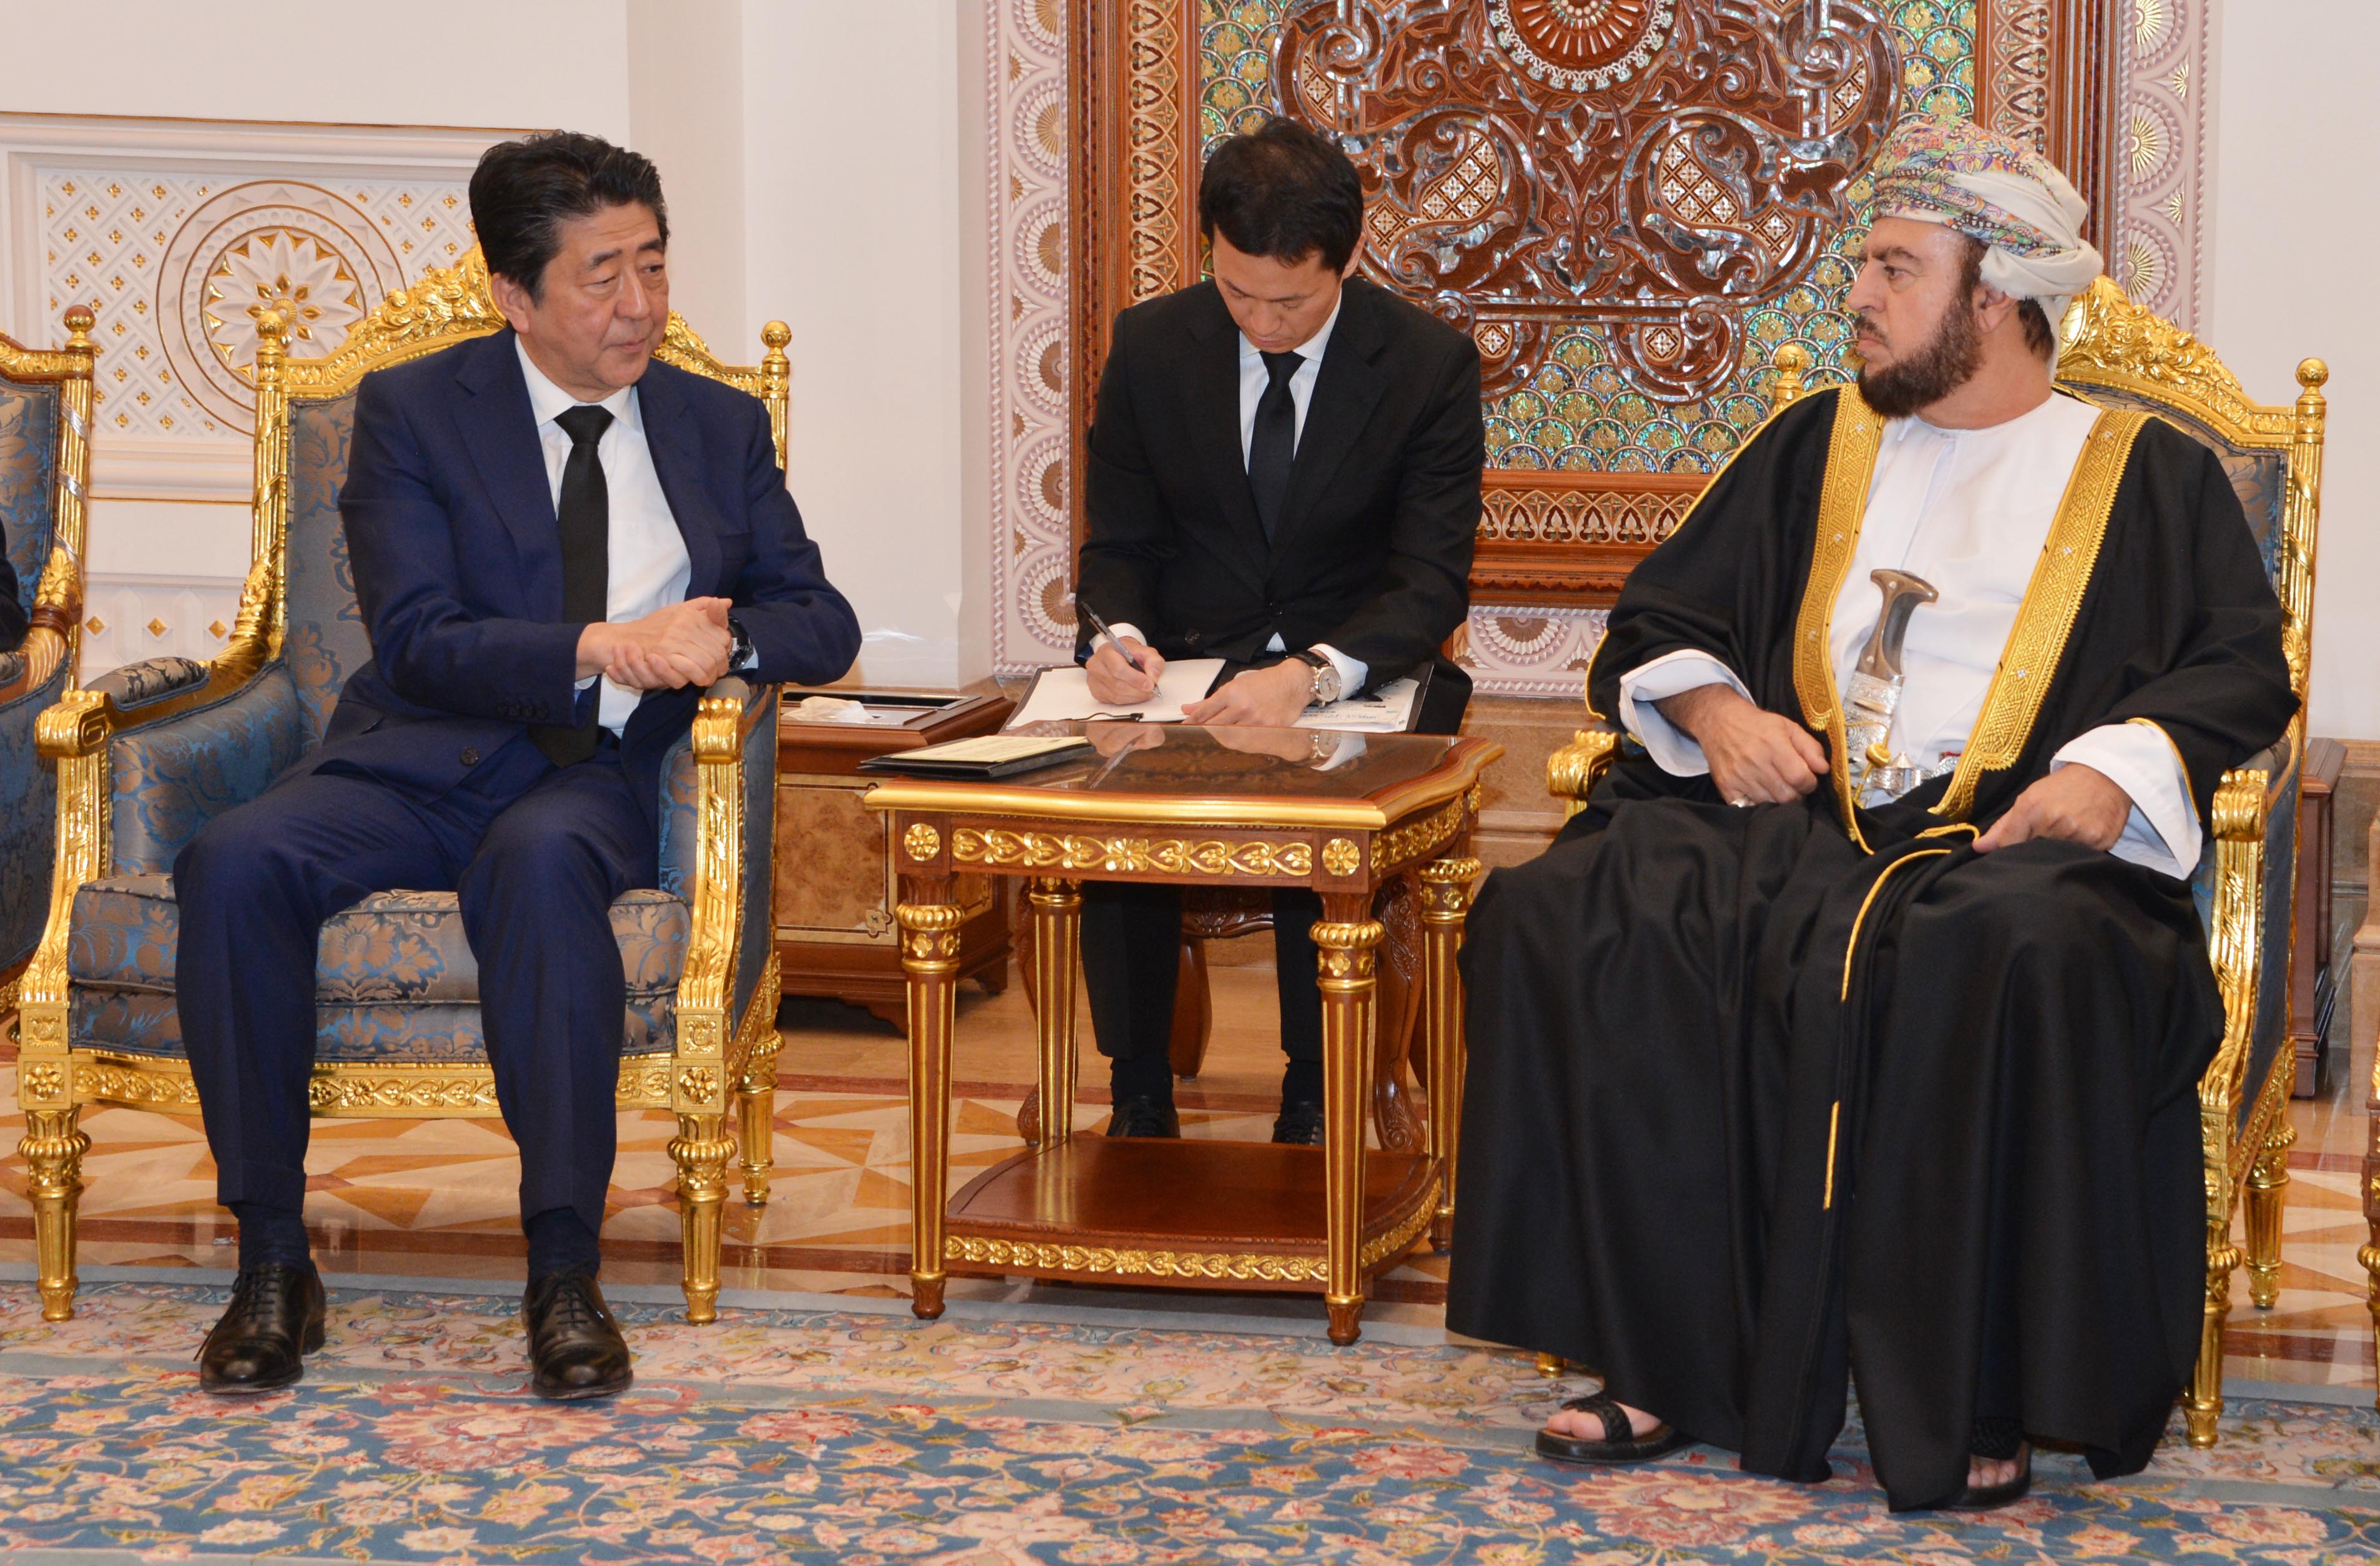 السيد أسعد بن طارق يستقبل رئيس وزراء اليابان